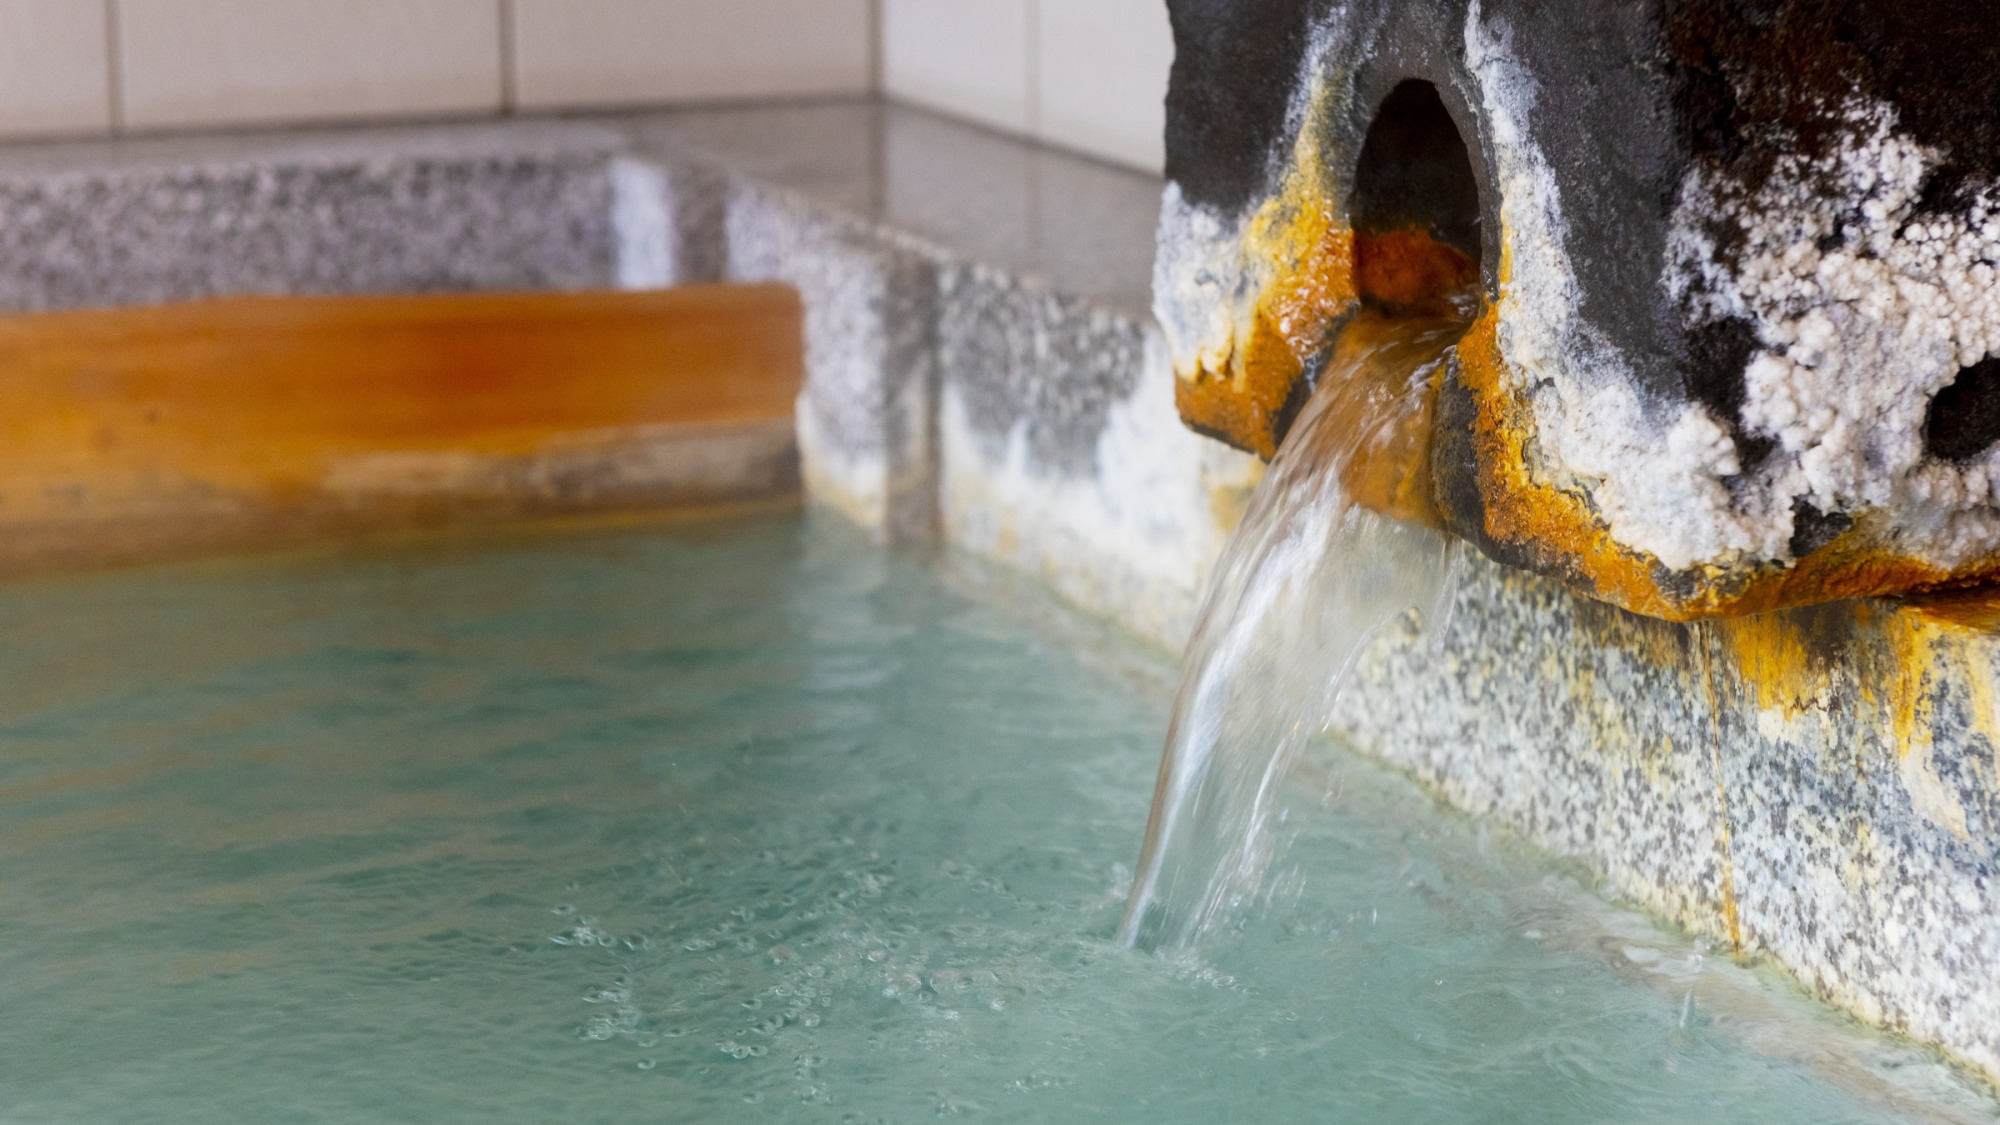 【温泉】化粧水のように肌に優しく効能豊かな猿ヶ京の湯が、すべての風呂にたっぷりと注がれています